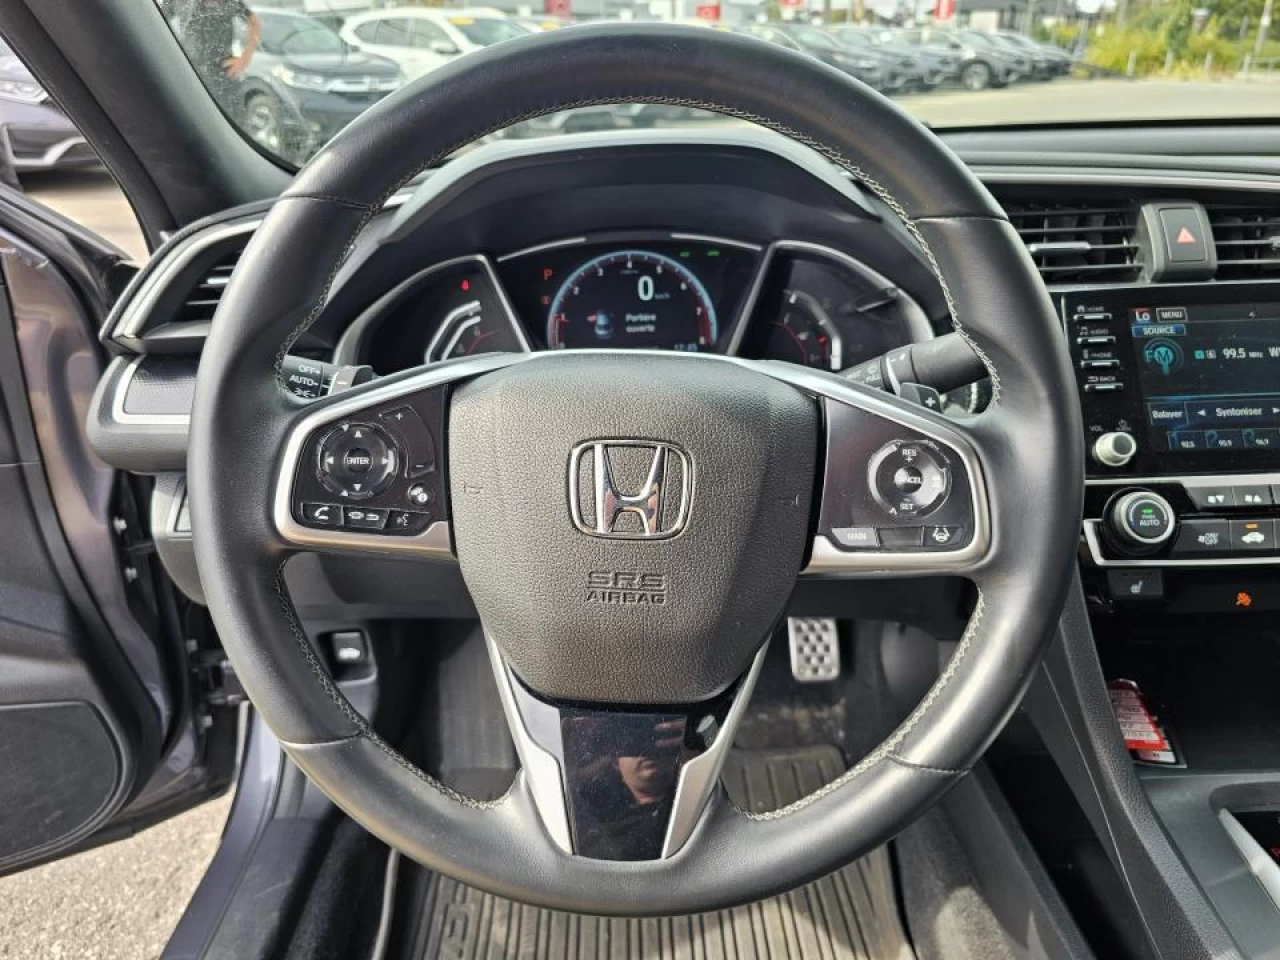 2020 Honda Civic Sedan Sport CVT Sedan Image principale